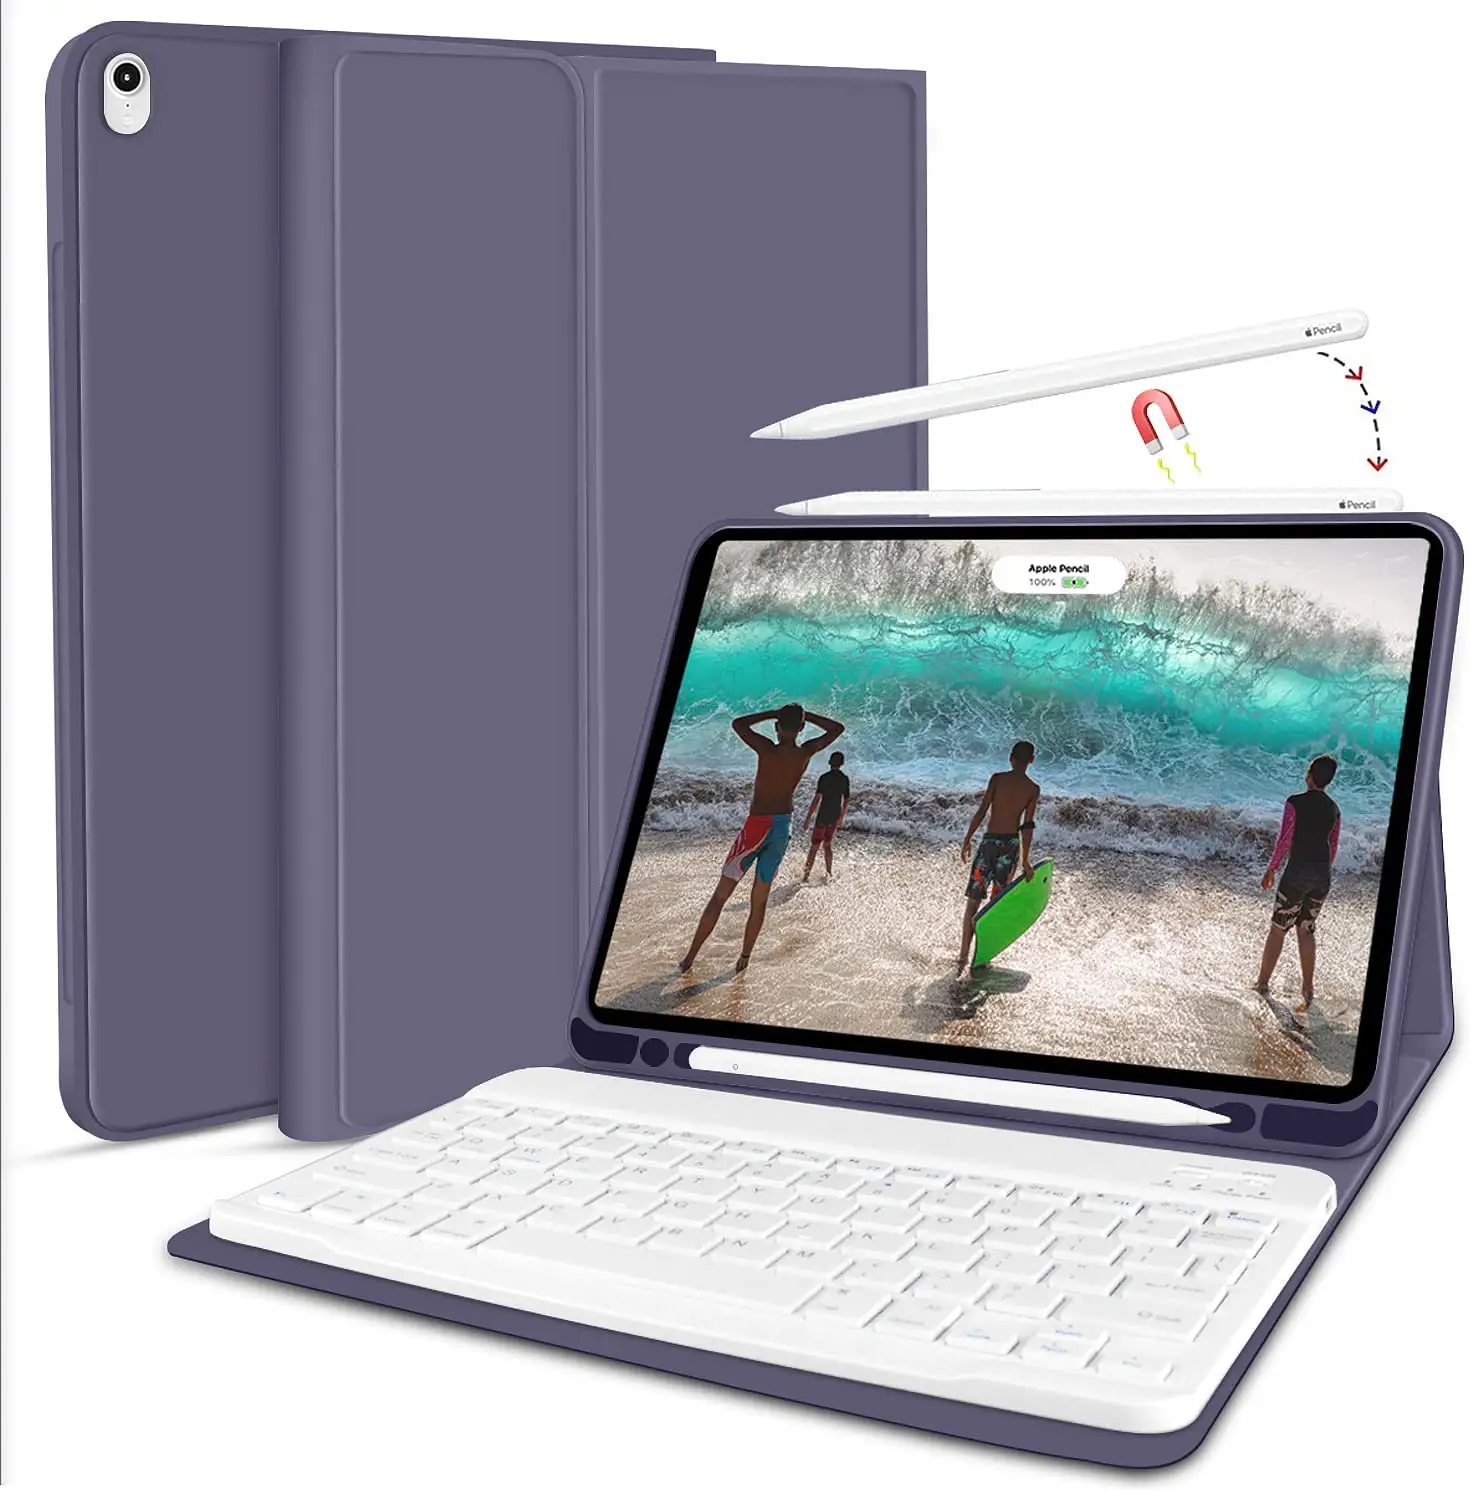 Casing iPad Air 4 10.9 Inci iPad, Sarung HP Nirkabel dengan Keyboard untuk iPad Air 4 2020